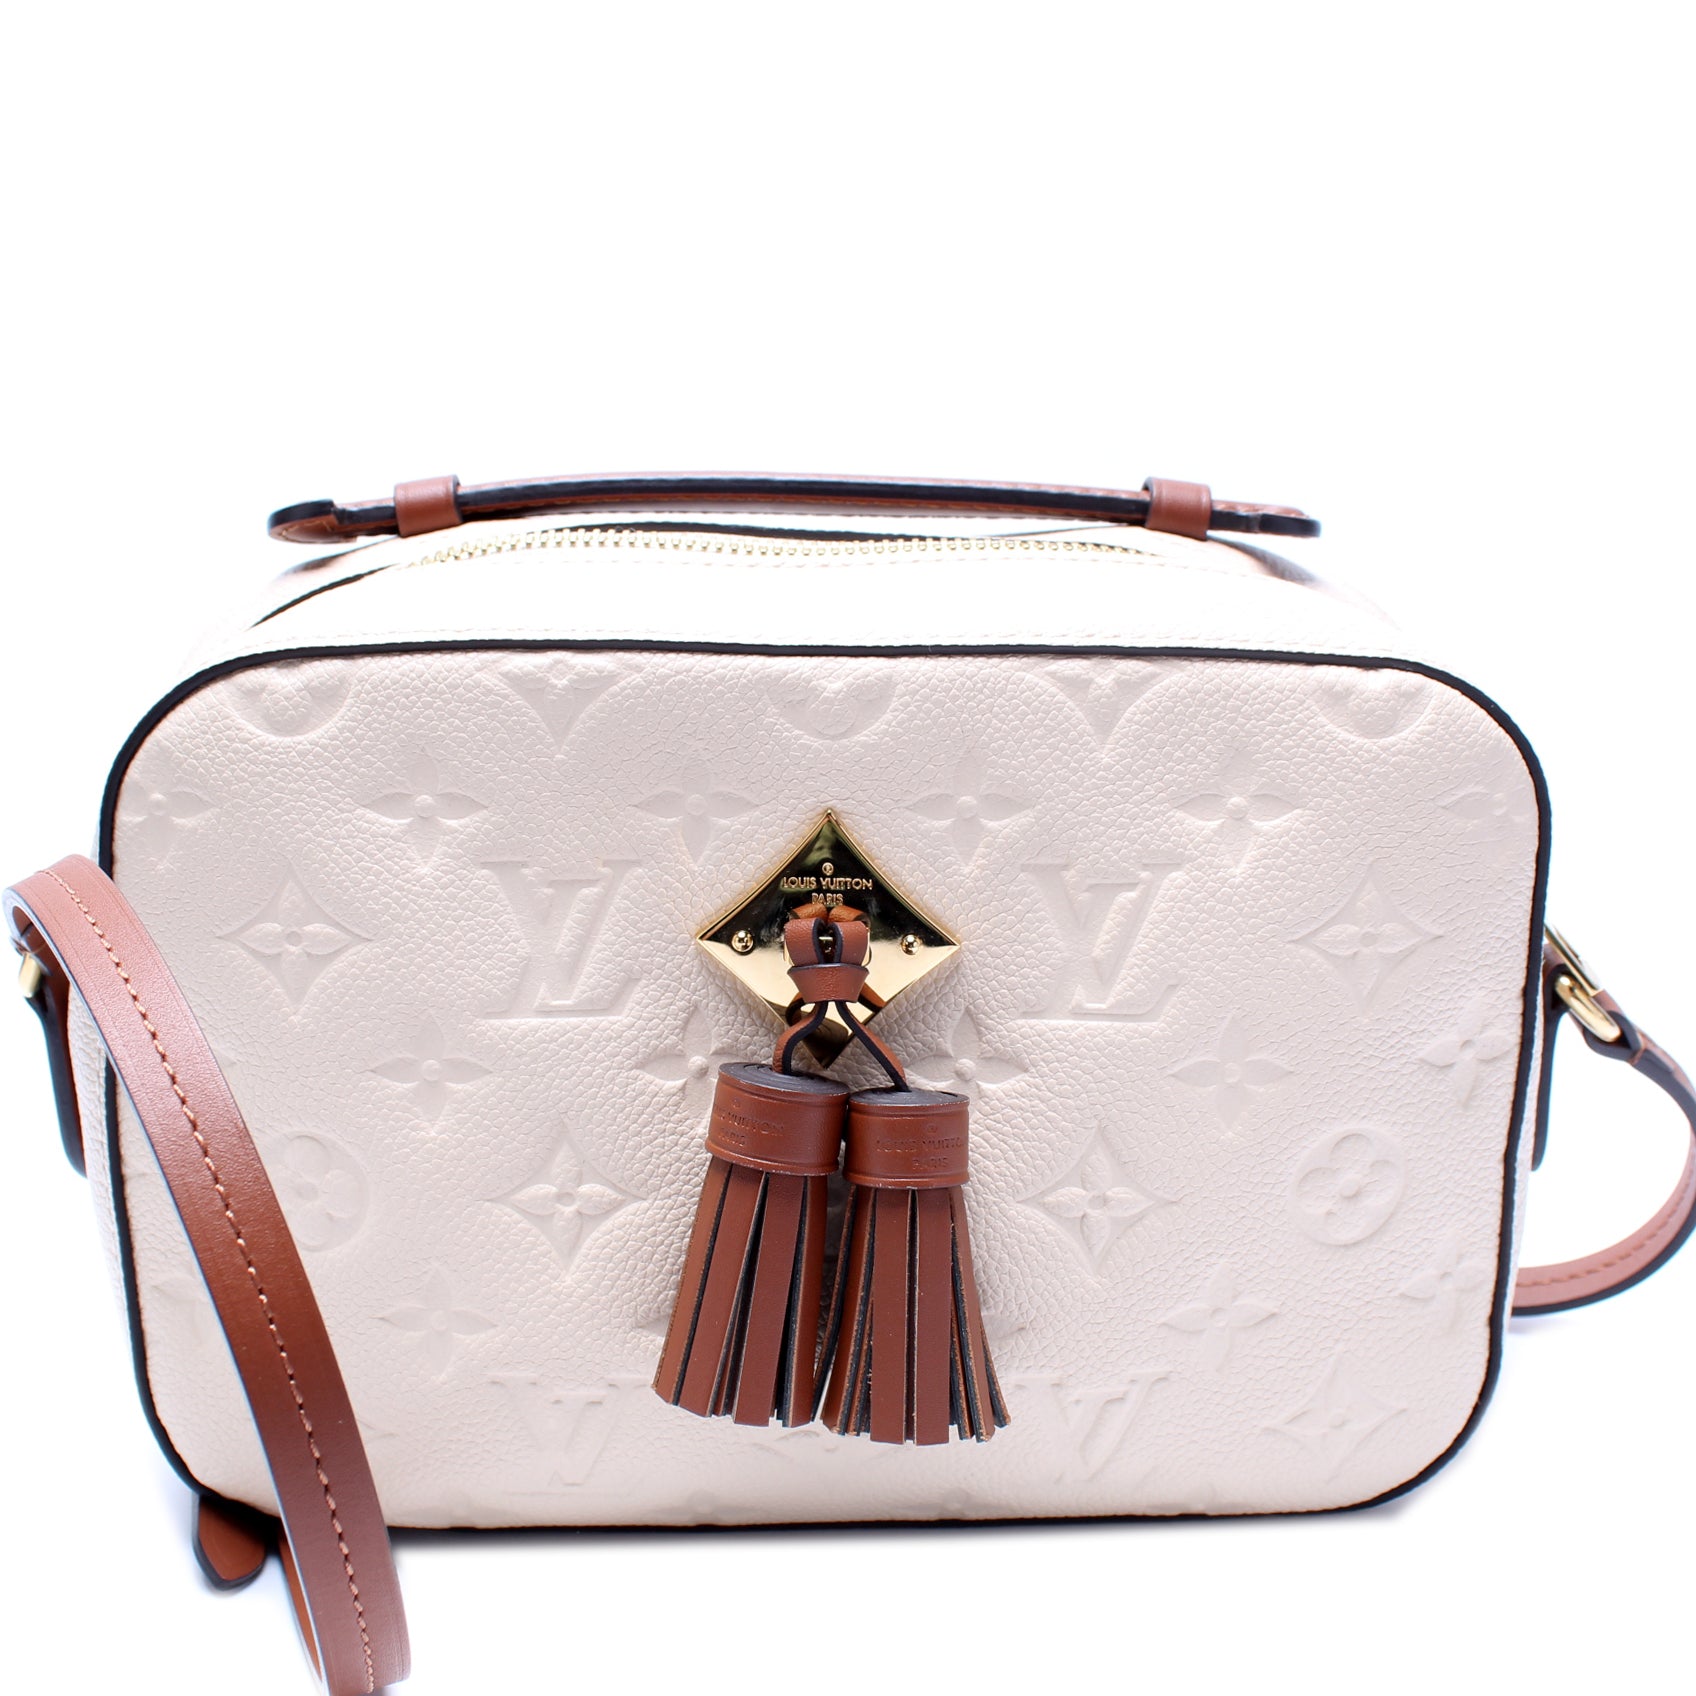 Louis+Vuitton+Saintonge+Shoulder+Bag+Brown+Canvas for sale online